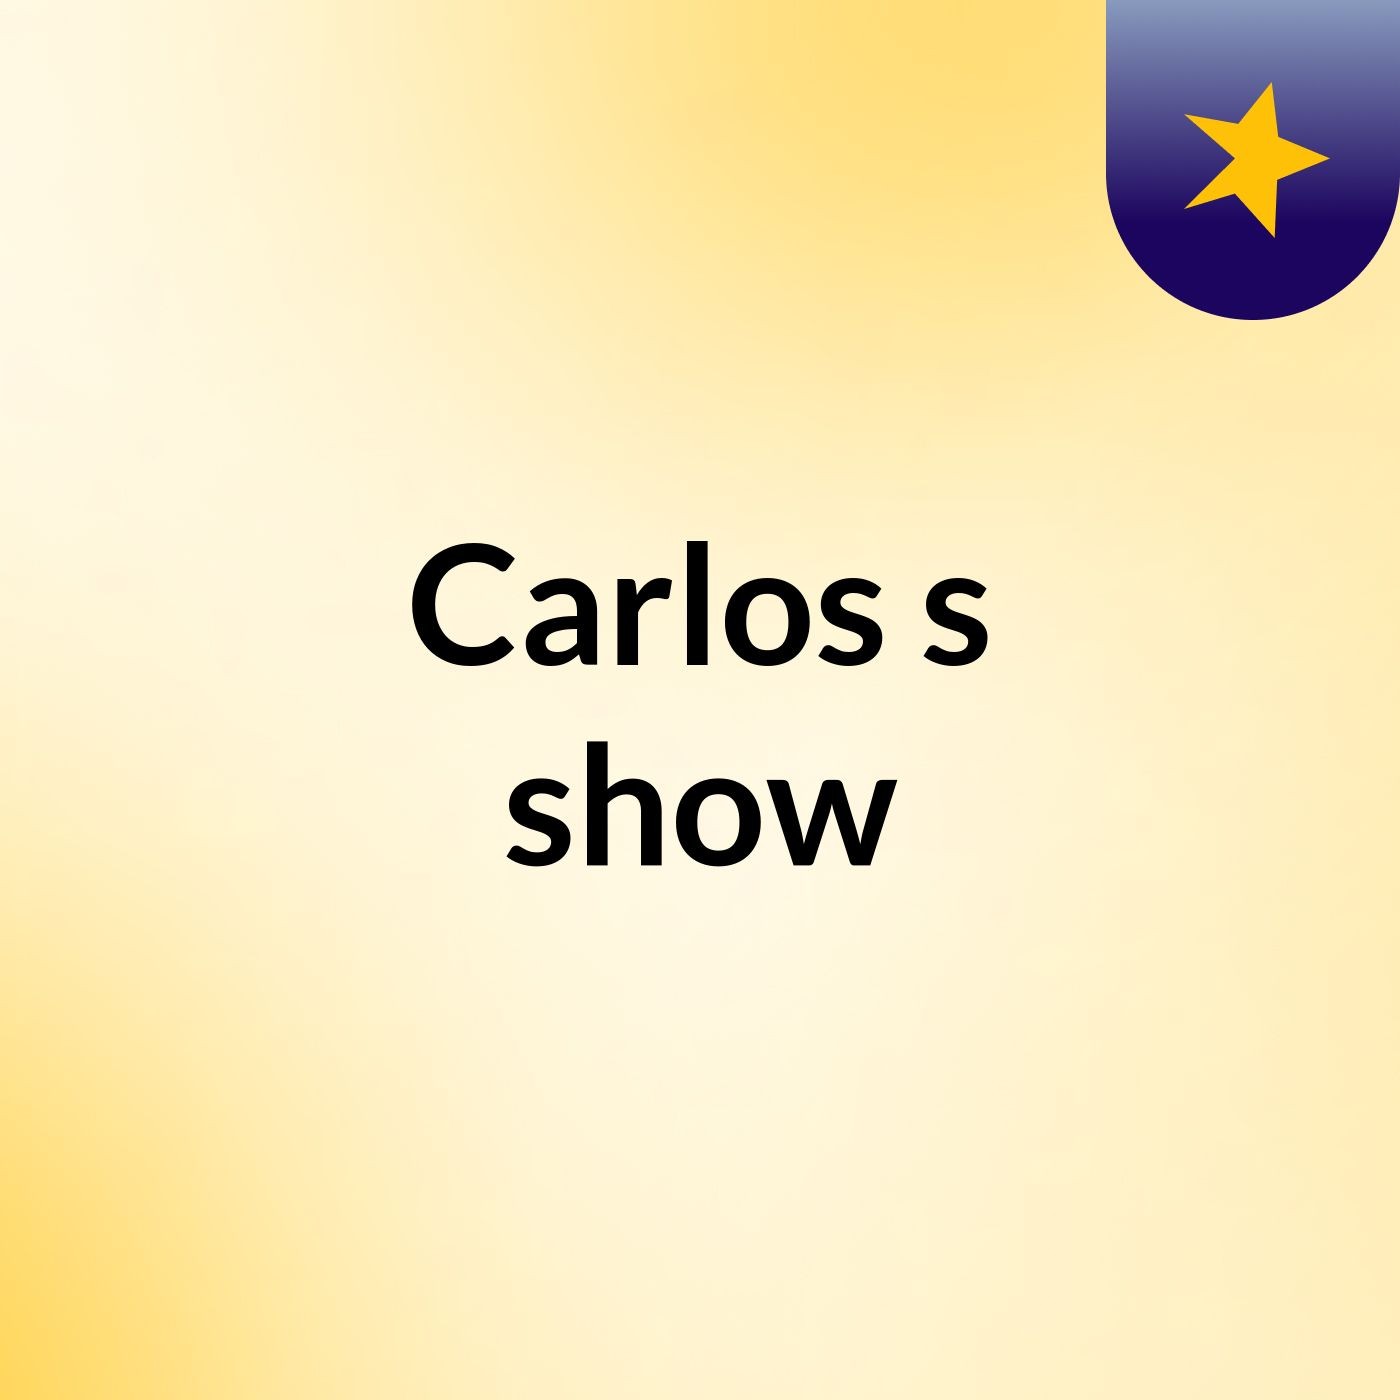 Carlos's show